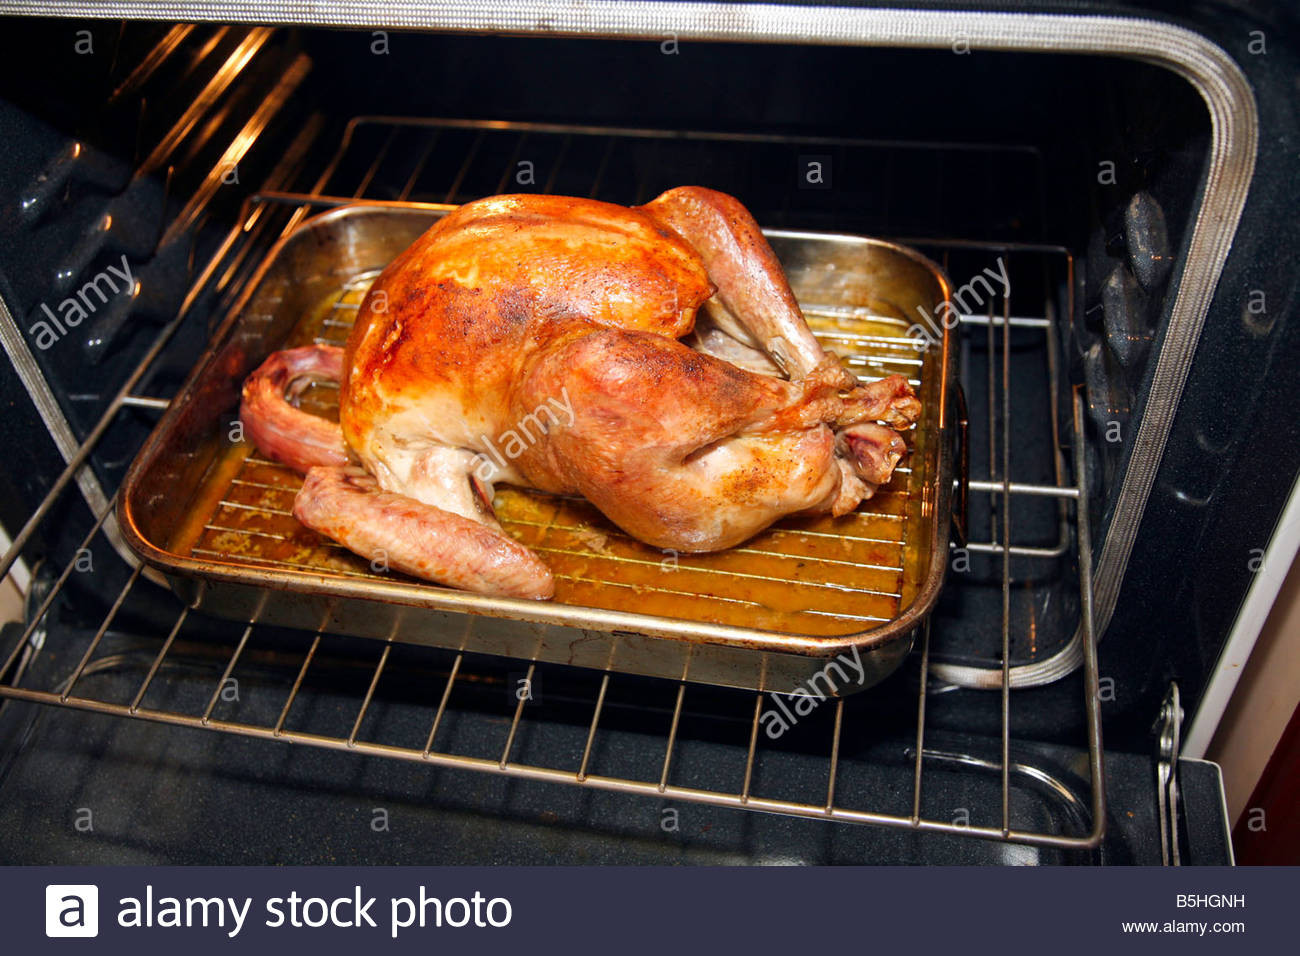 Preparing A Turkey For Thanksgiving
 Turkey in the oven Preparing a Thanksgiving or Christmas